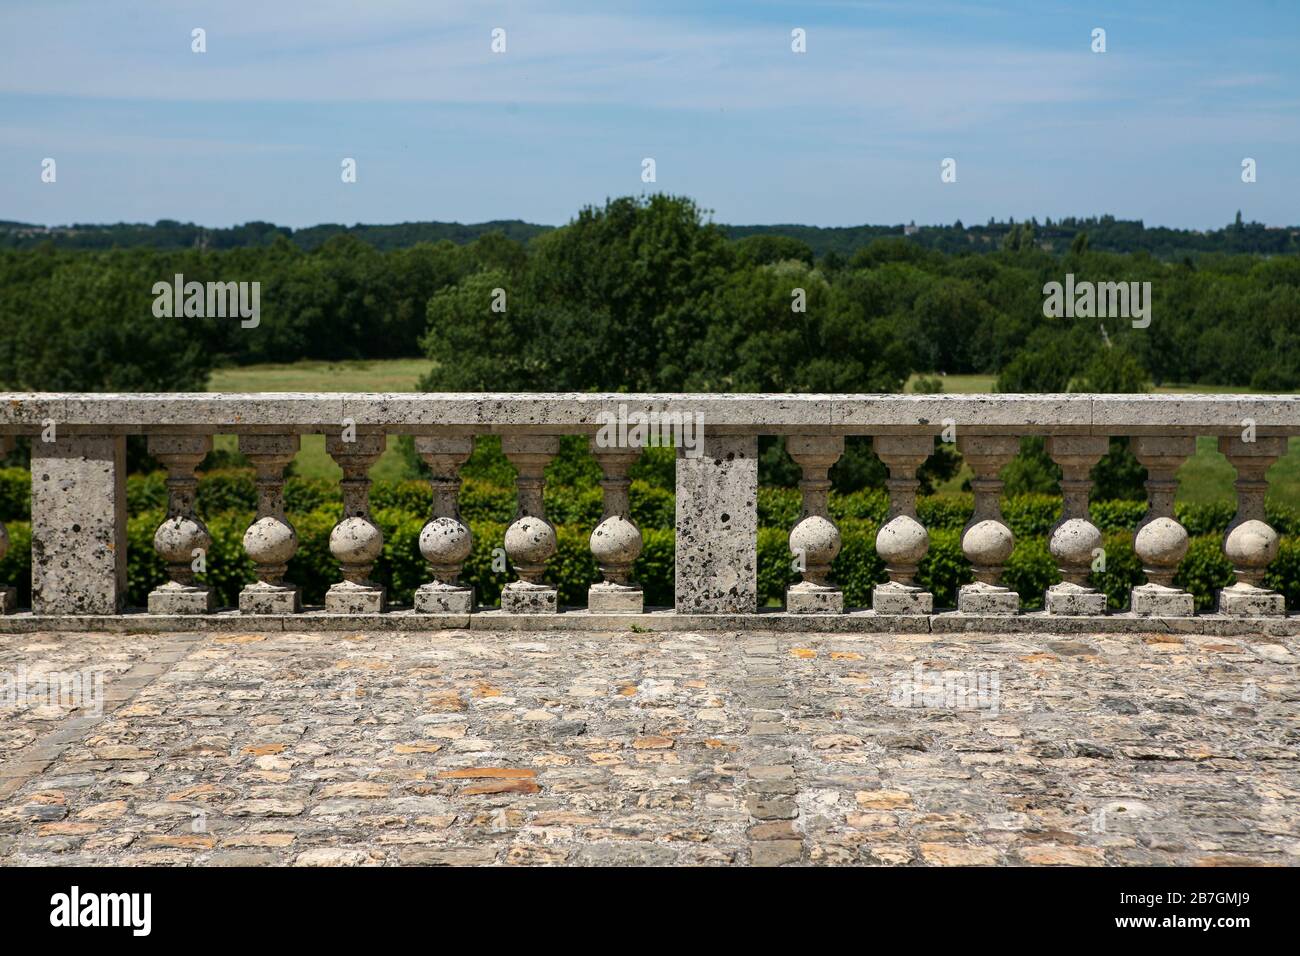 Antica balaustra francese in pietra all'aperto con vista in alto del paesaggio oltre, ciottoli in pietra di fronte, Chateau de Villandry, Francia Foto Stock